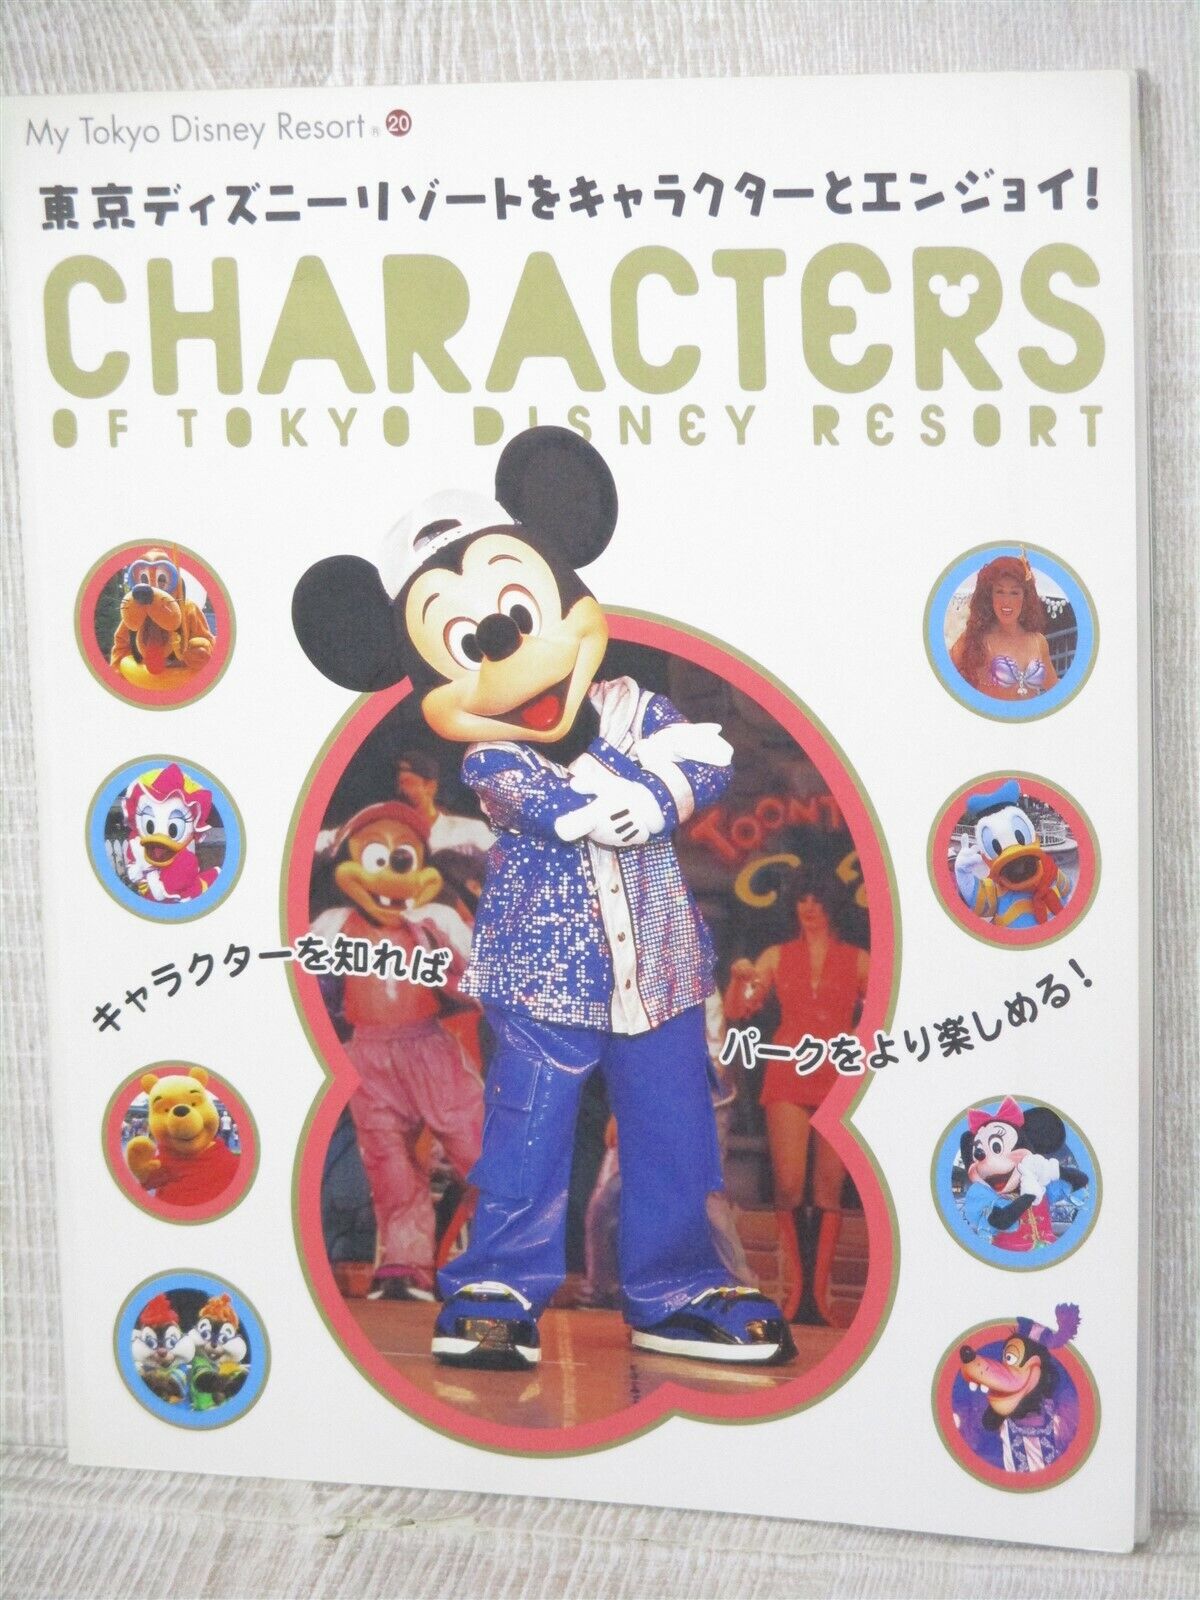 TOKYO DISNEY RESORT CHARACTERS Art Fan Guide 2004 Japan Book KO09